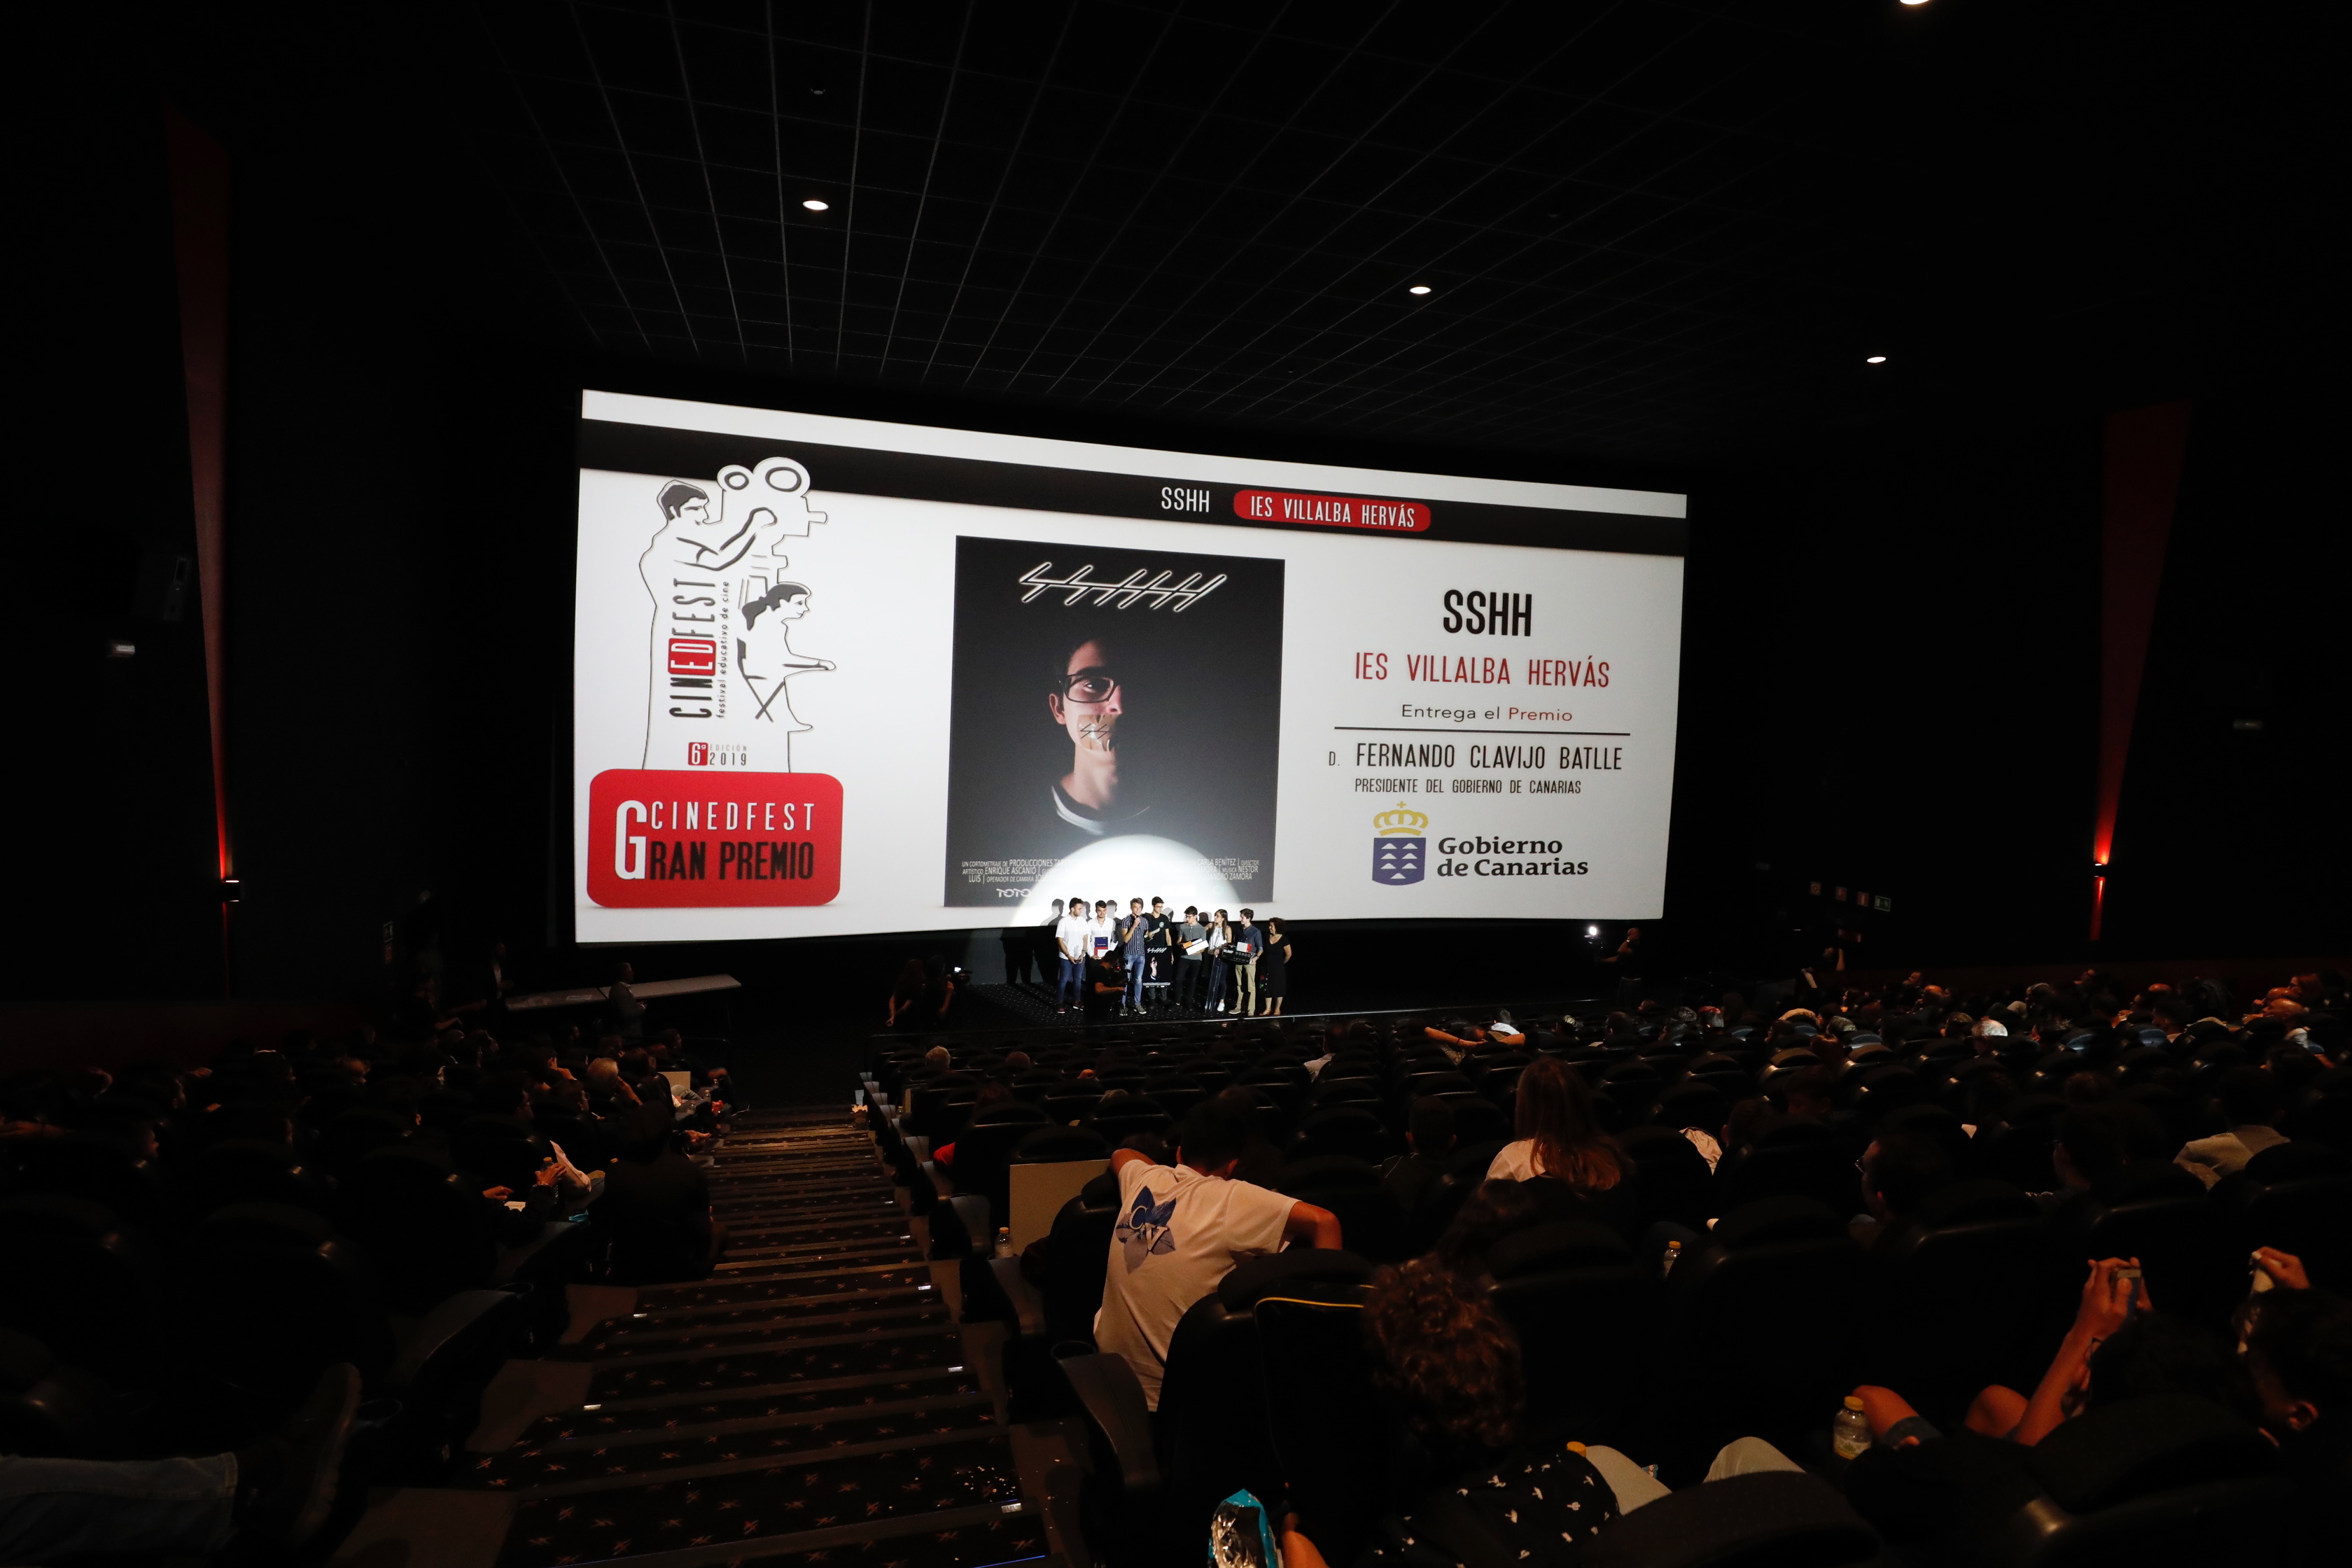 Y el Gran Premio del Cinedfest es para el IES Villalba Hervás